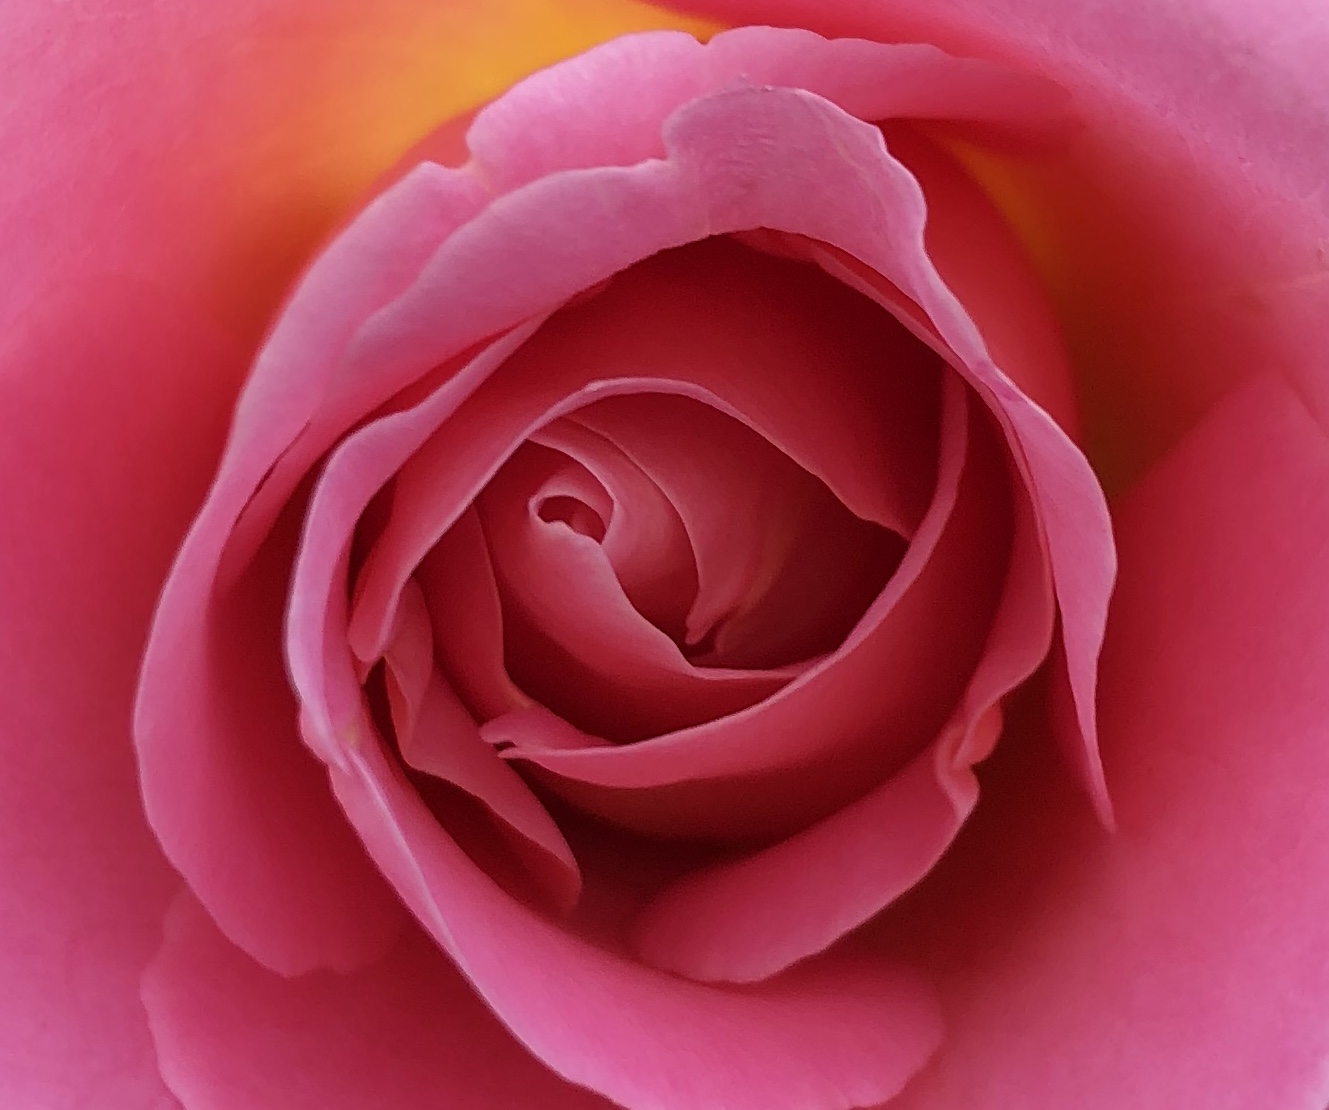 Rose, by Ellie Bucciarelli